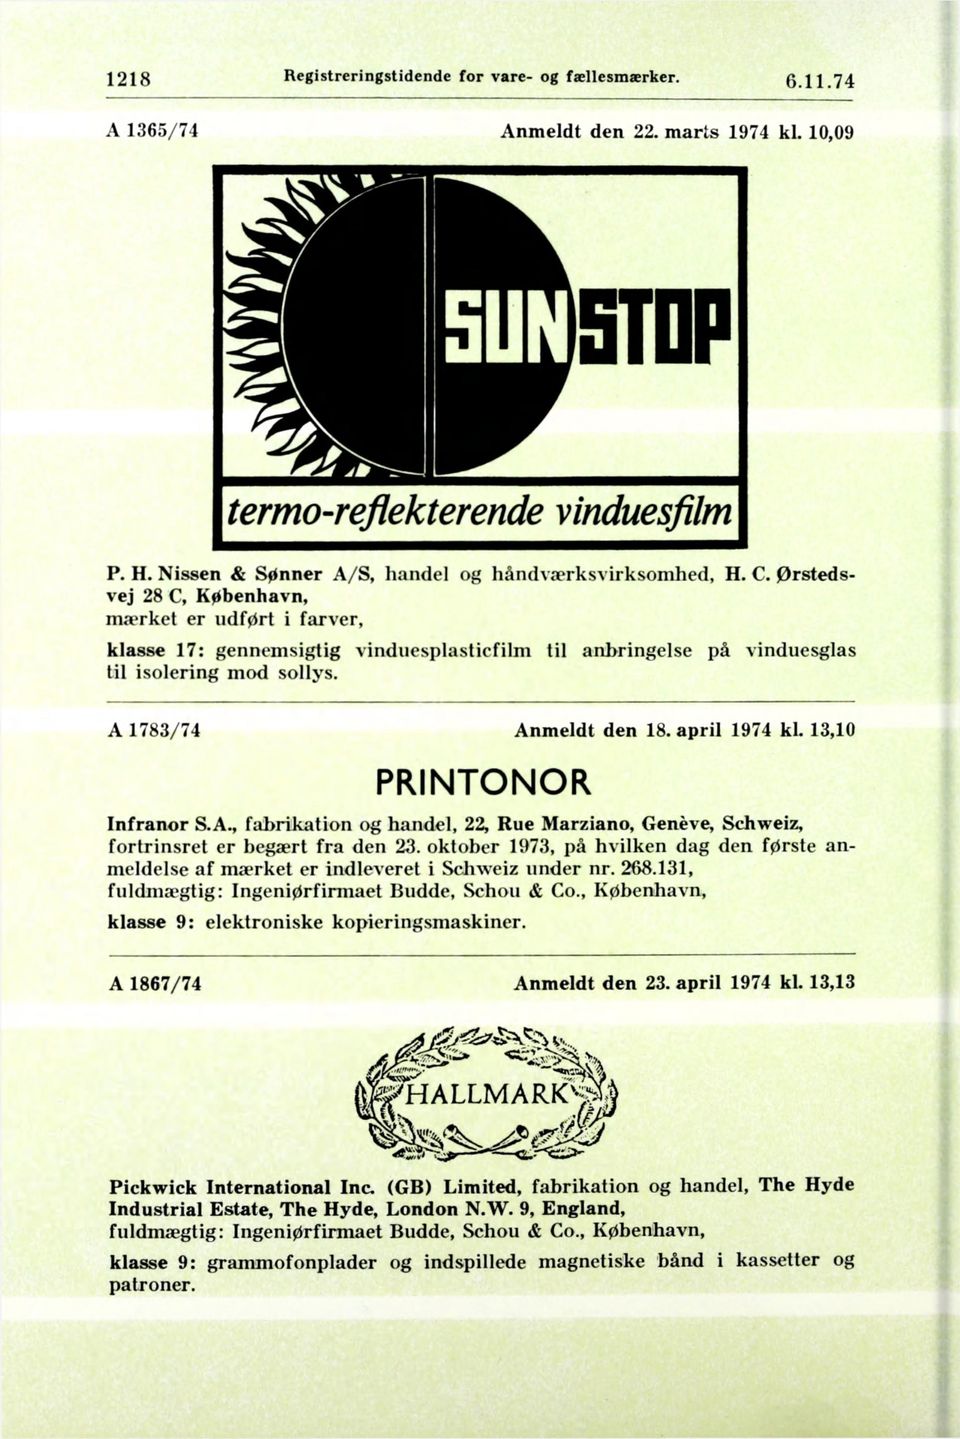 13,10 PRINTONOR Infranor S.A., fabrikation og handel, 22, Rue Marziano, Geneve, Schweiz, fortrinsret er begært fra den 23.